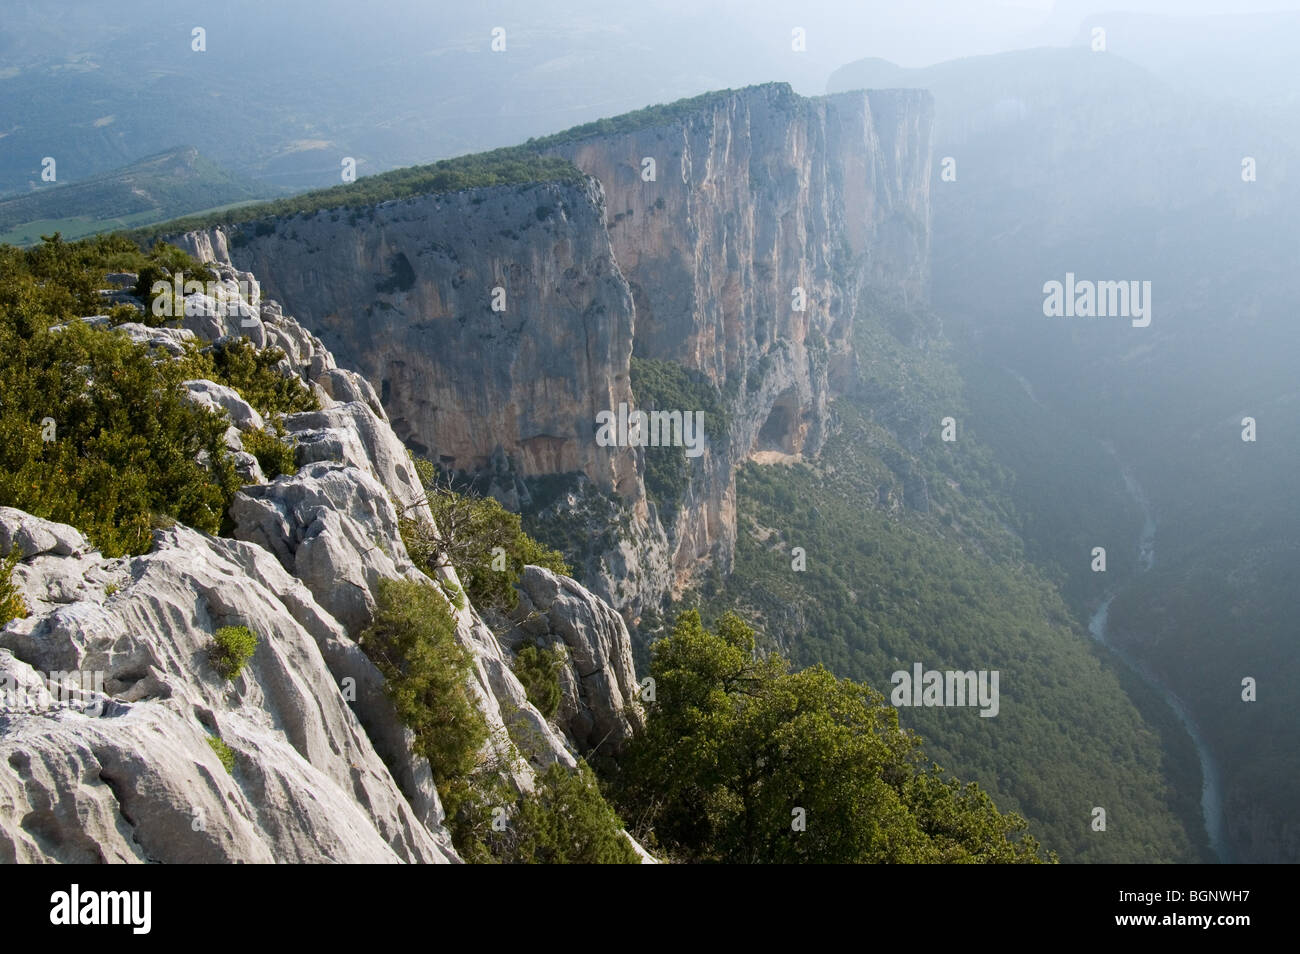 Los escarpados acantilados de piedra caliza del cañón Gorges du Verdon / Verdon Gorge, Alpes-de-Haute-Provence, Provenza, Francia Foto de stock